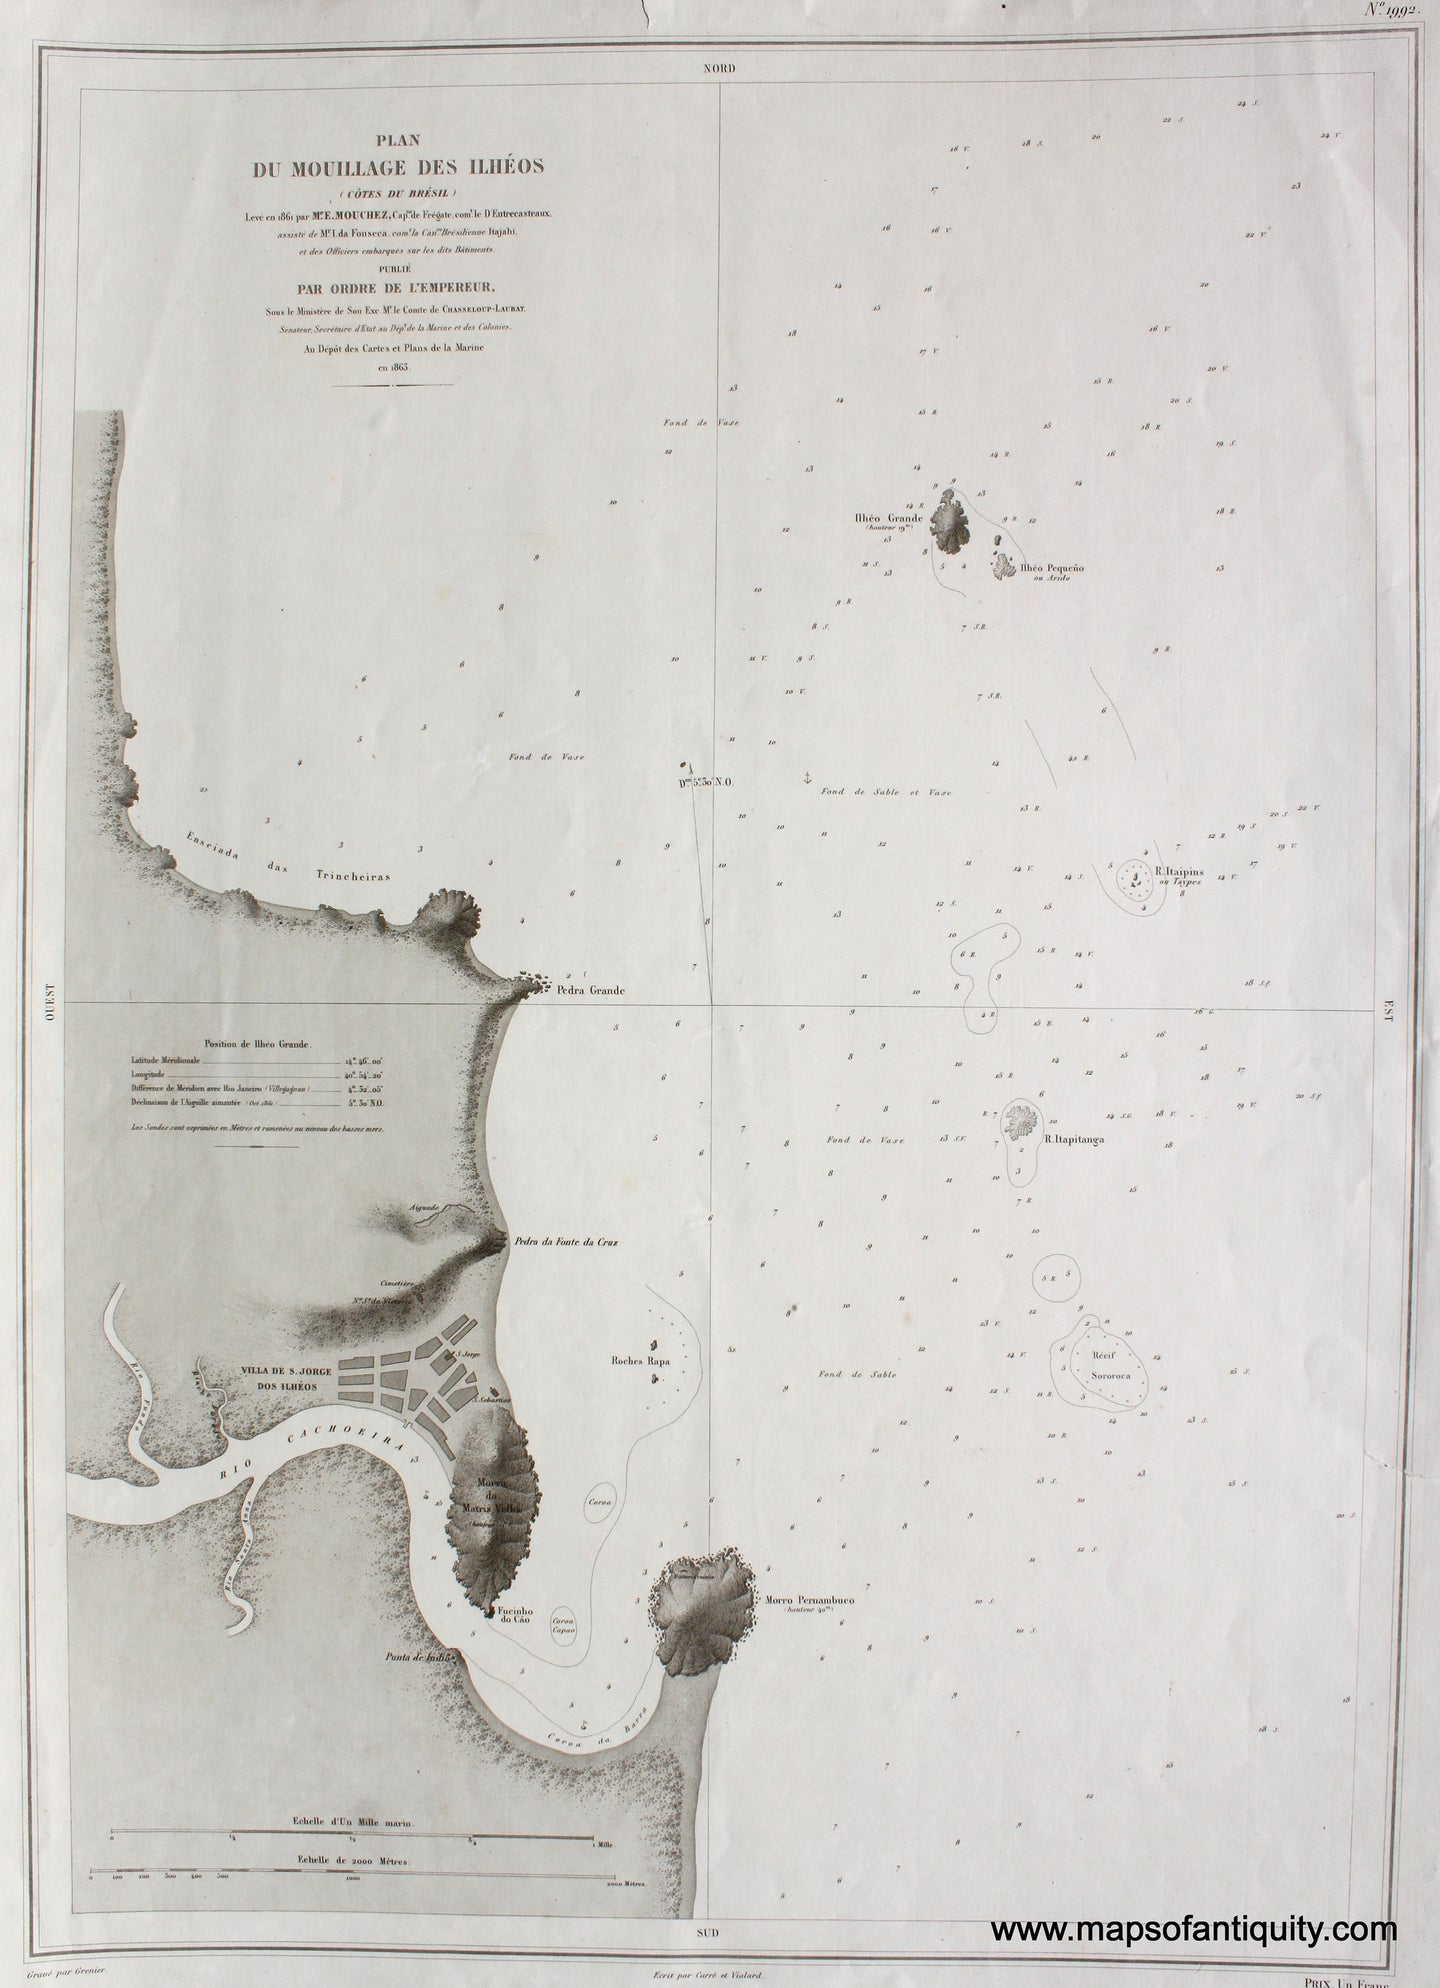 Antique-Black-and-White-Nautical-Chart-Plan-du-Mouillage-des-Ilheos-(Cotes-du-Bresil)-South-America-Brazil-1863-Depot-de-la-Marine-Maps-Of-Antiquity